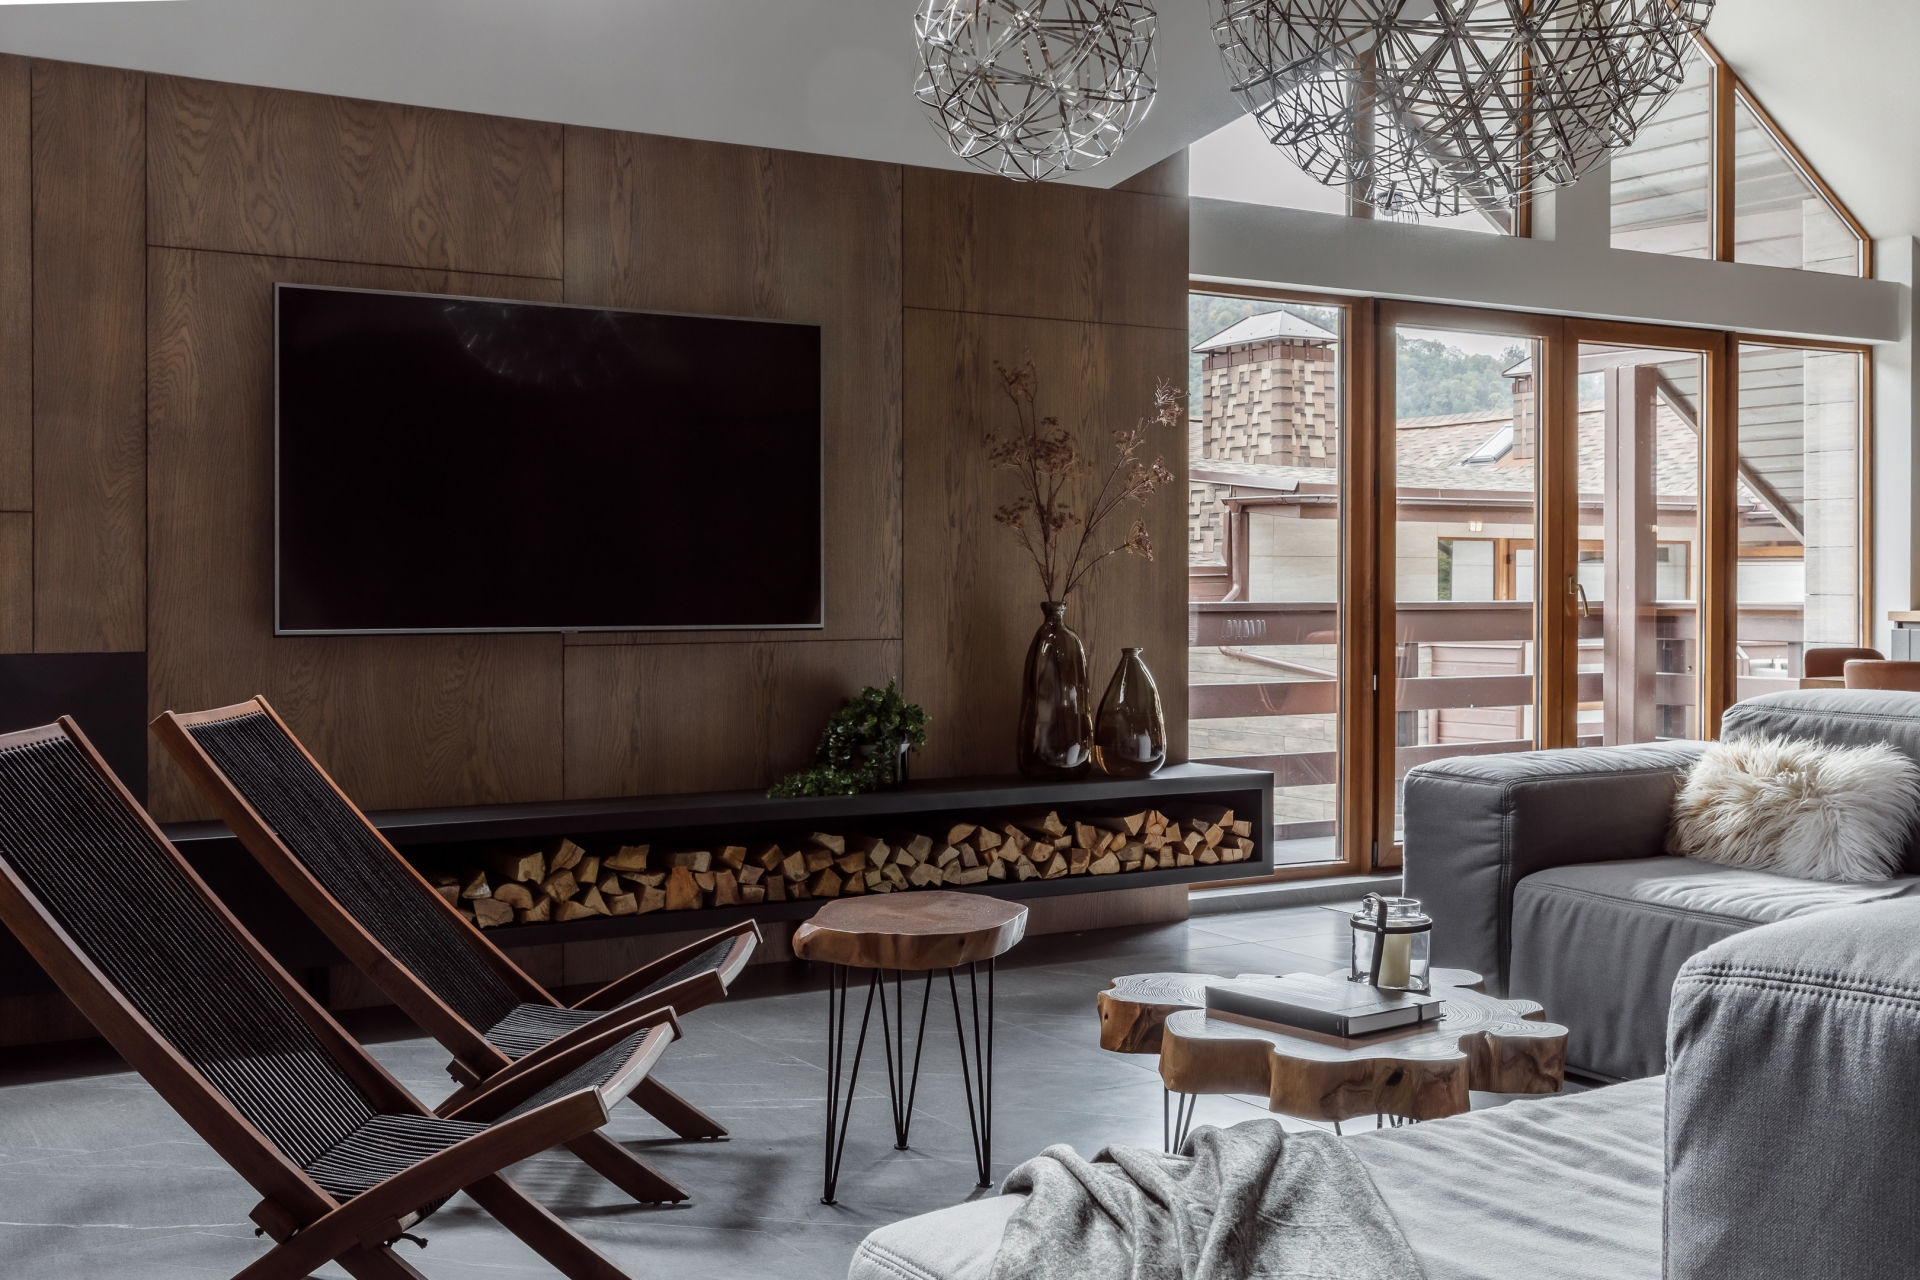 Không gian phòng khách trên căn hộ áp mái thu hút người nhìn bởi vẻ đẹp cổ điển pha lẫn hiện đại, với sự góp mặt của nội thất gỗ bền vững, thân thiện với môi trường cùng tone màu xám chẳng bao giờ lo lỗi mốt.